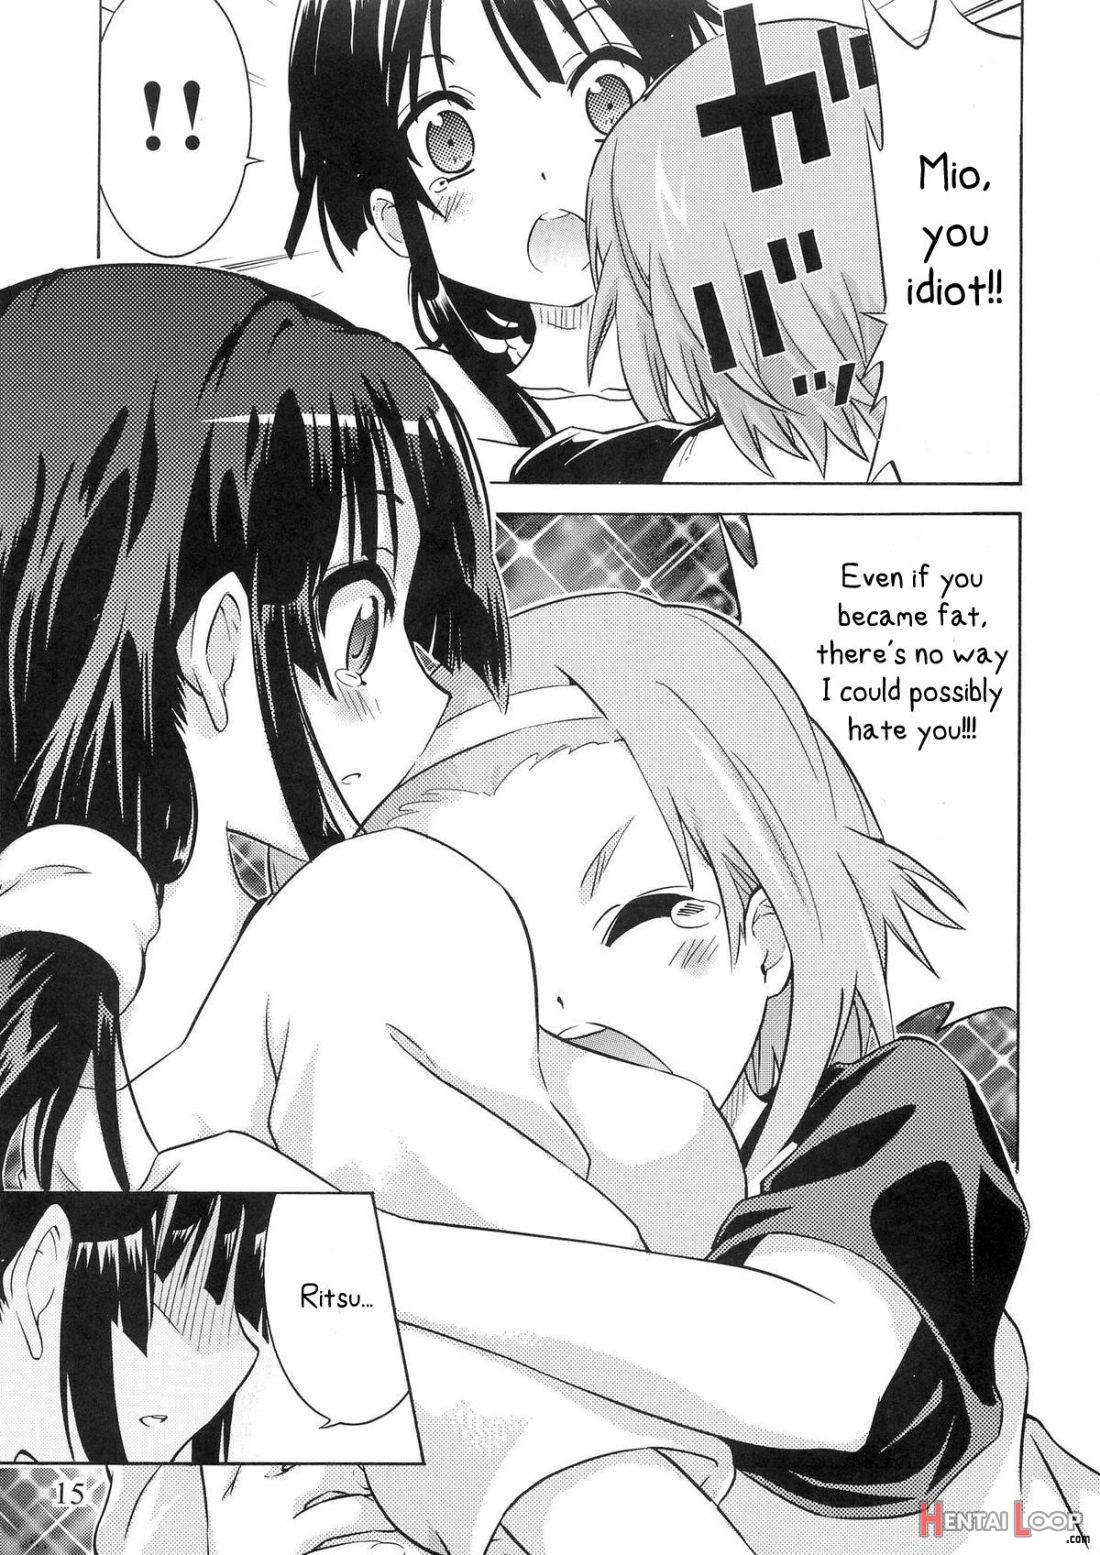 Yuri-on! #2 “kosokoso Mio-chan!” page 13